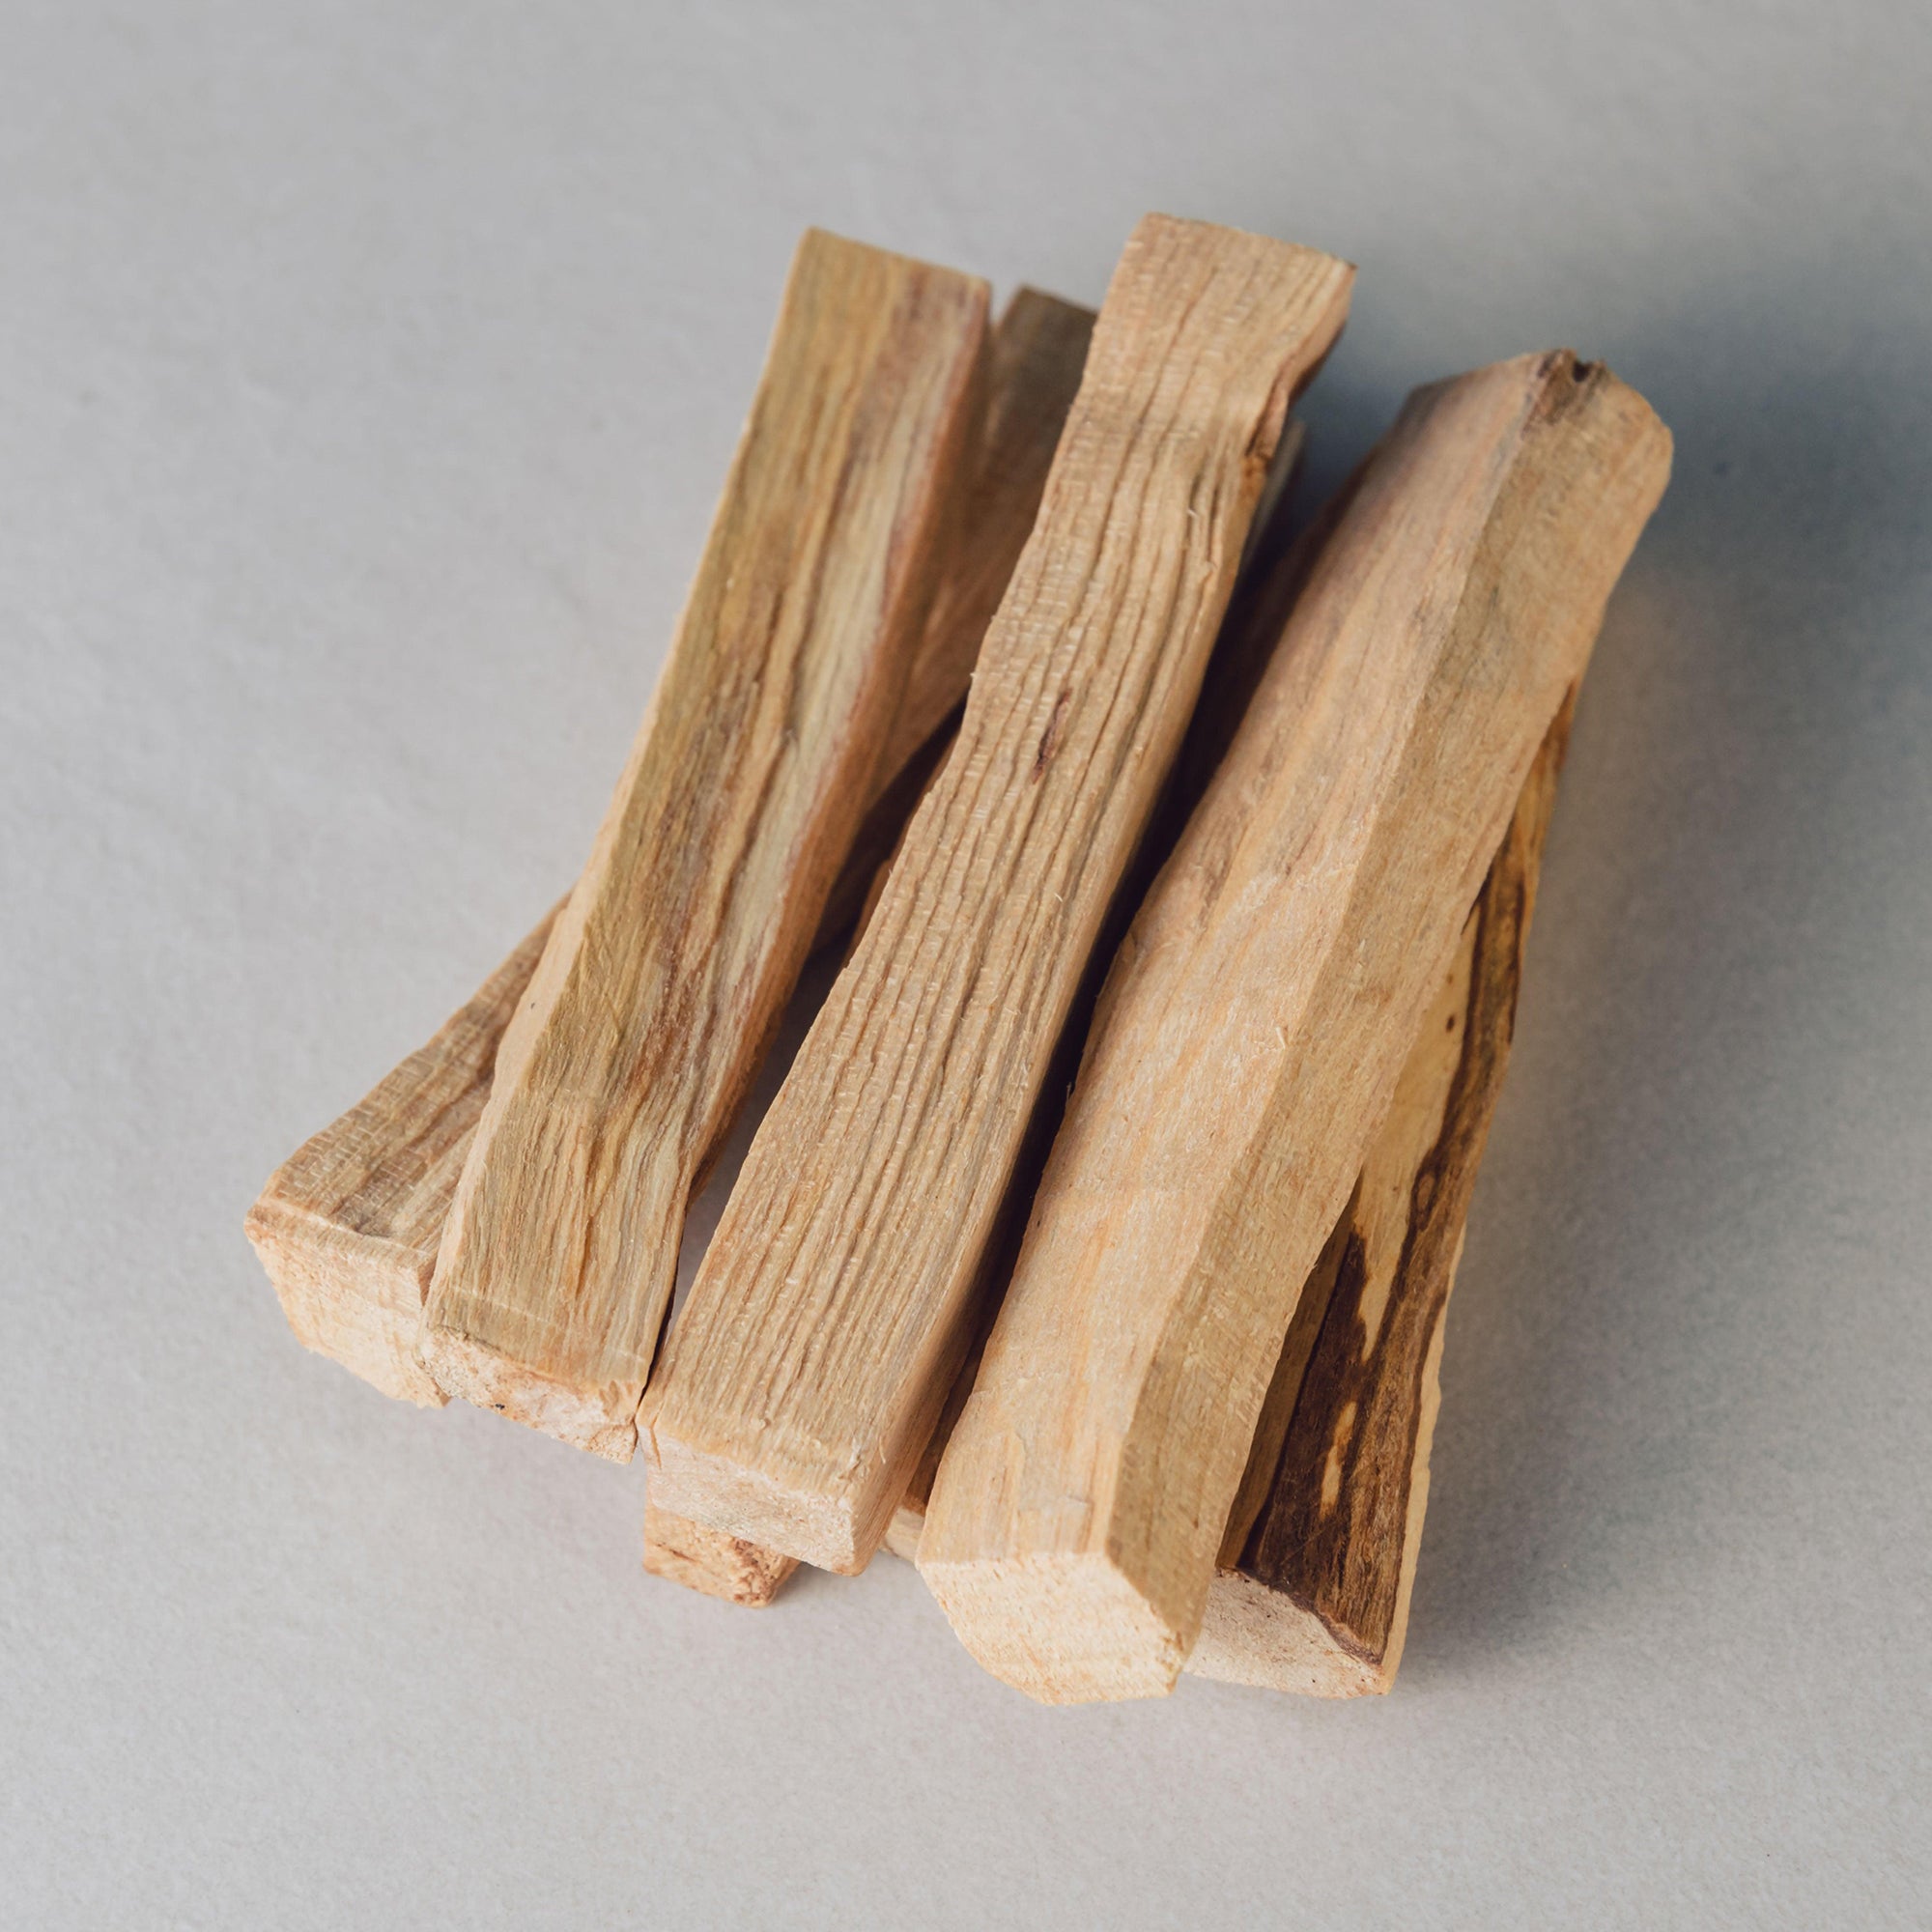 Palo santo incense wood smudge sticks